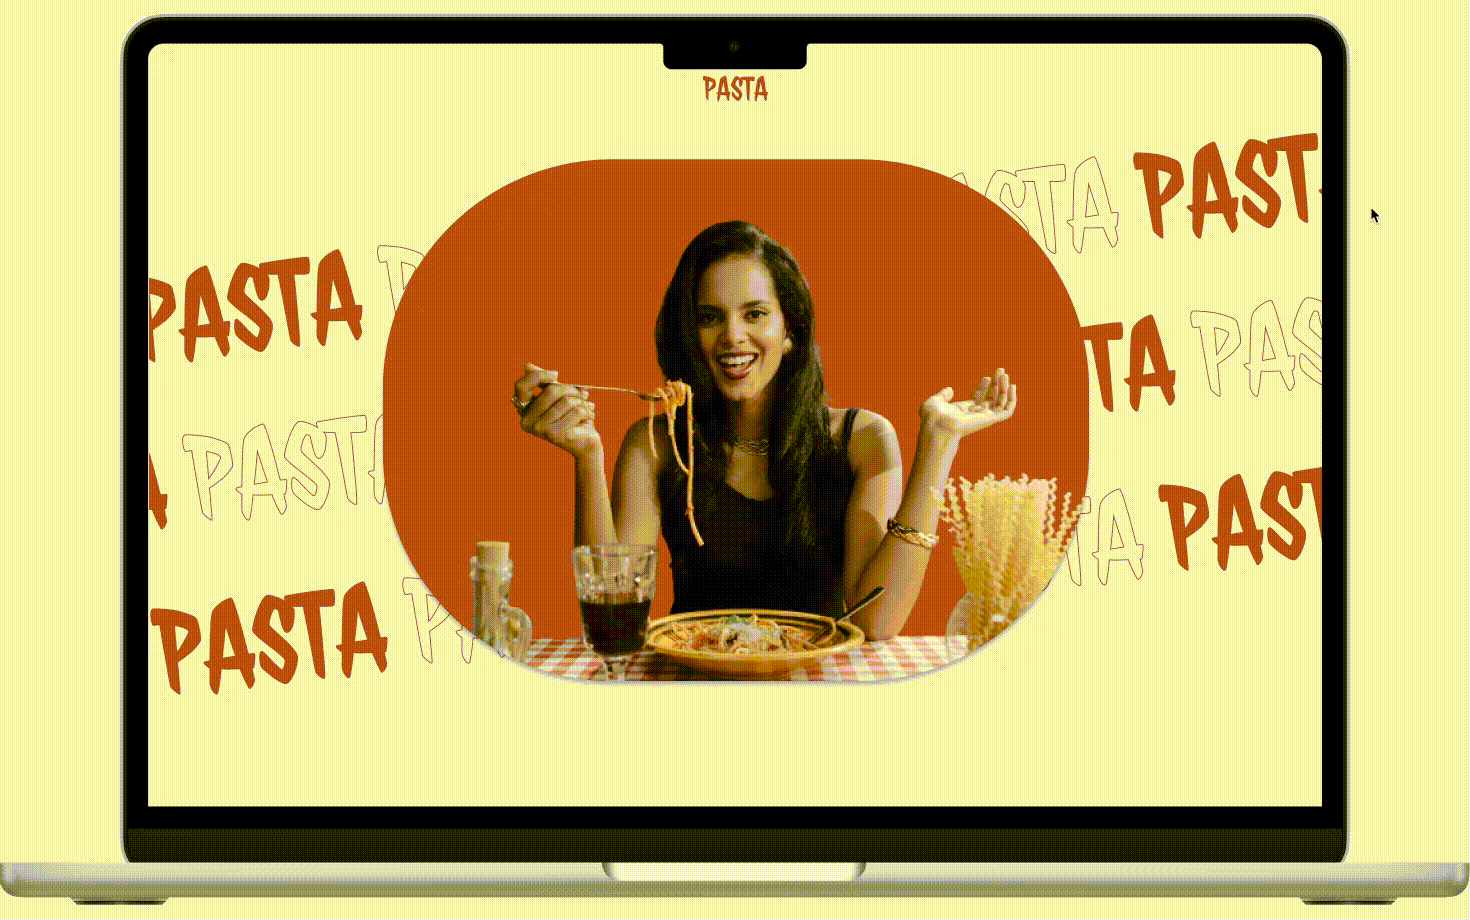 Restaurant - Pasta app design figma graphic design illustration logo pasta restaurant spaghetti ui ux vector website